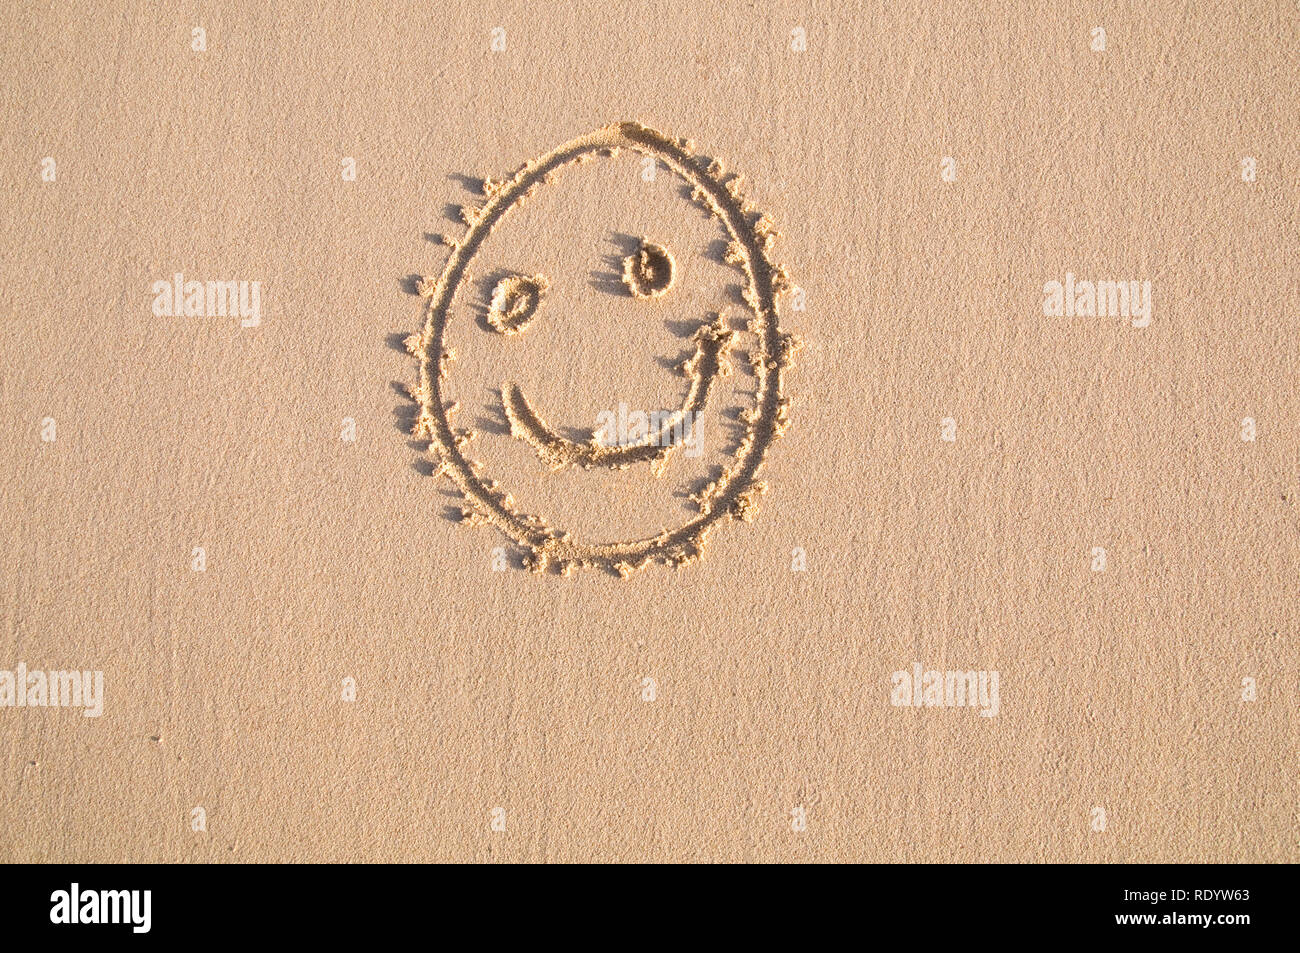 Ein Symbol oder eine Grafik glückliches Gesicht auf einer sauberen Strand Sand gezeichnet. Eine Grafik für Sommer Urlaub oder Freizeit. Stockfoto